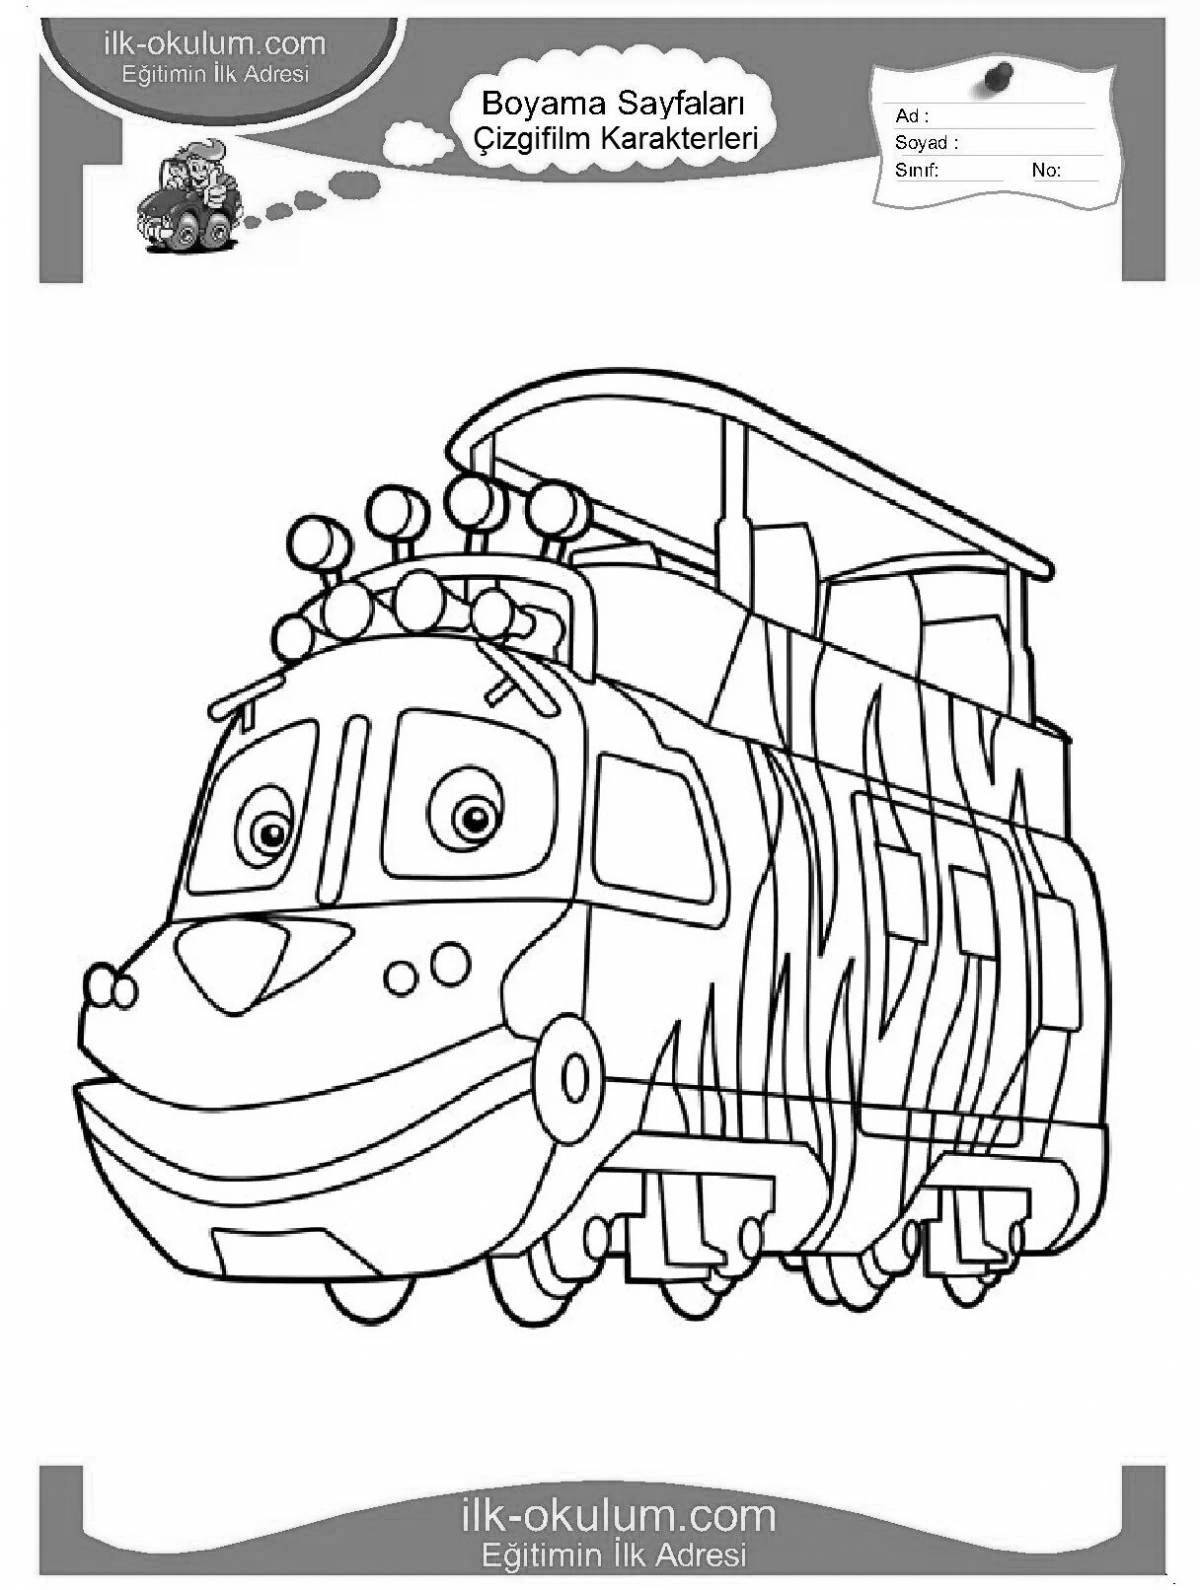 Живой мультфильм о поезде